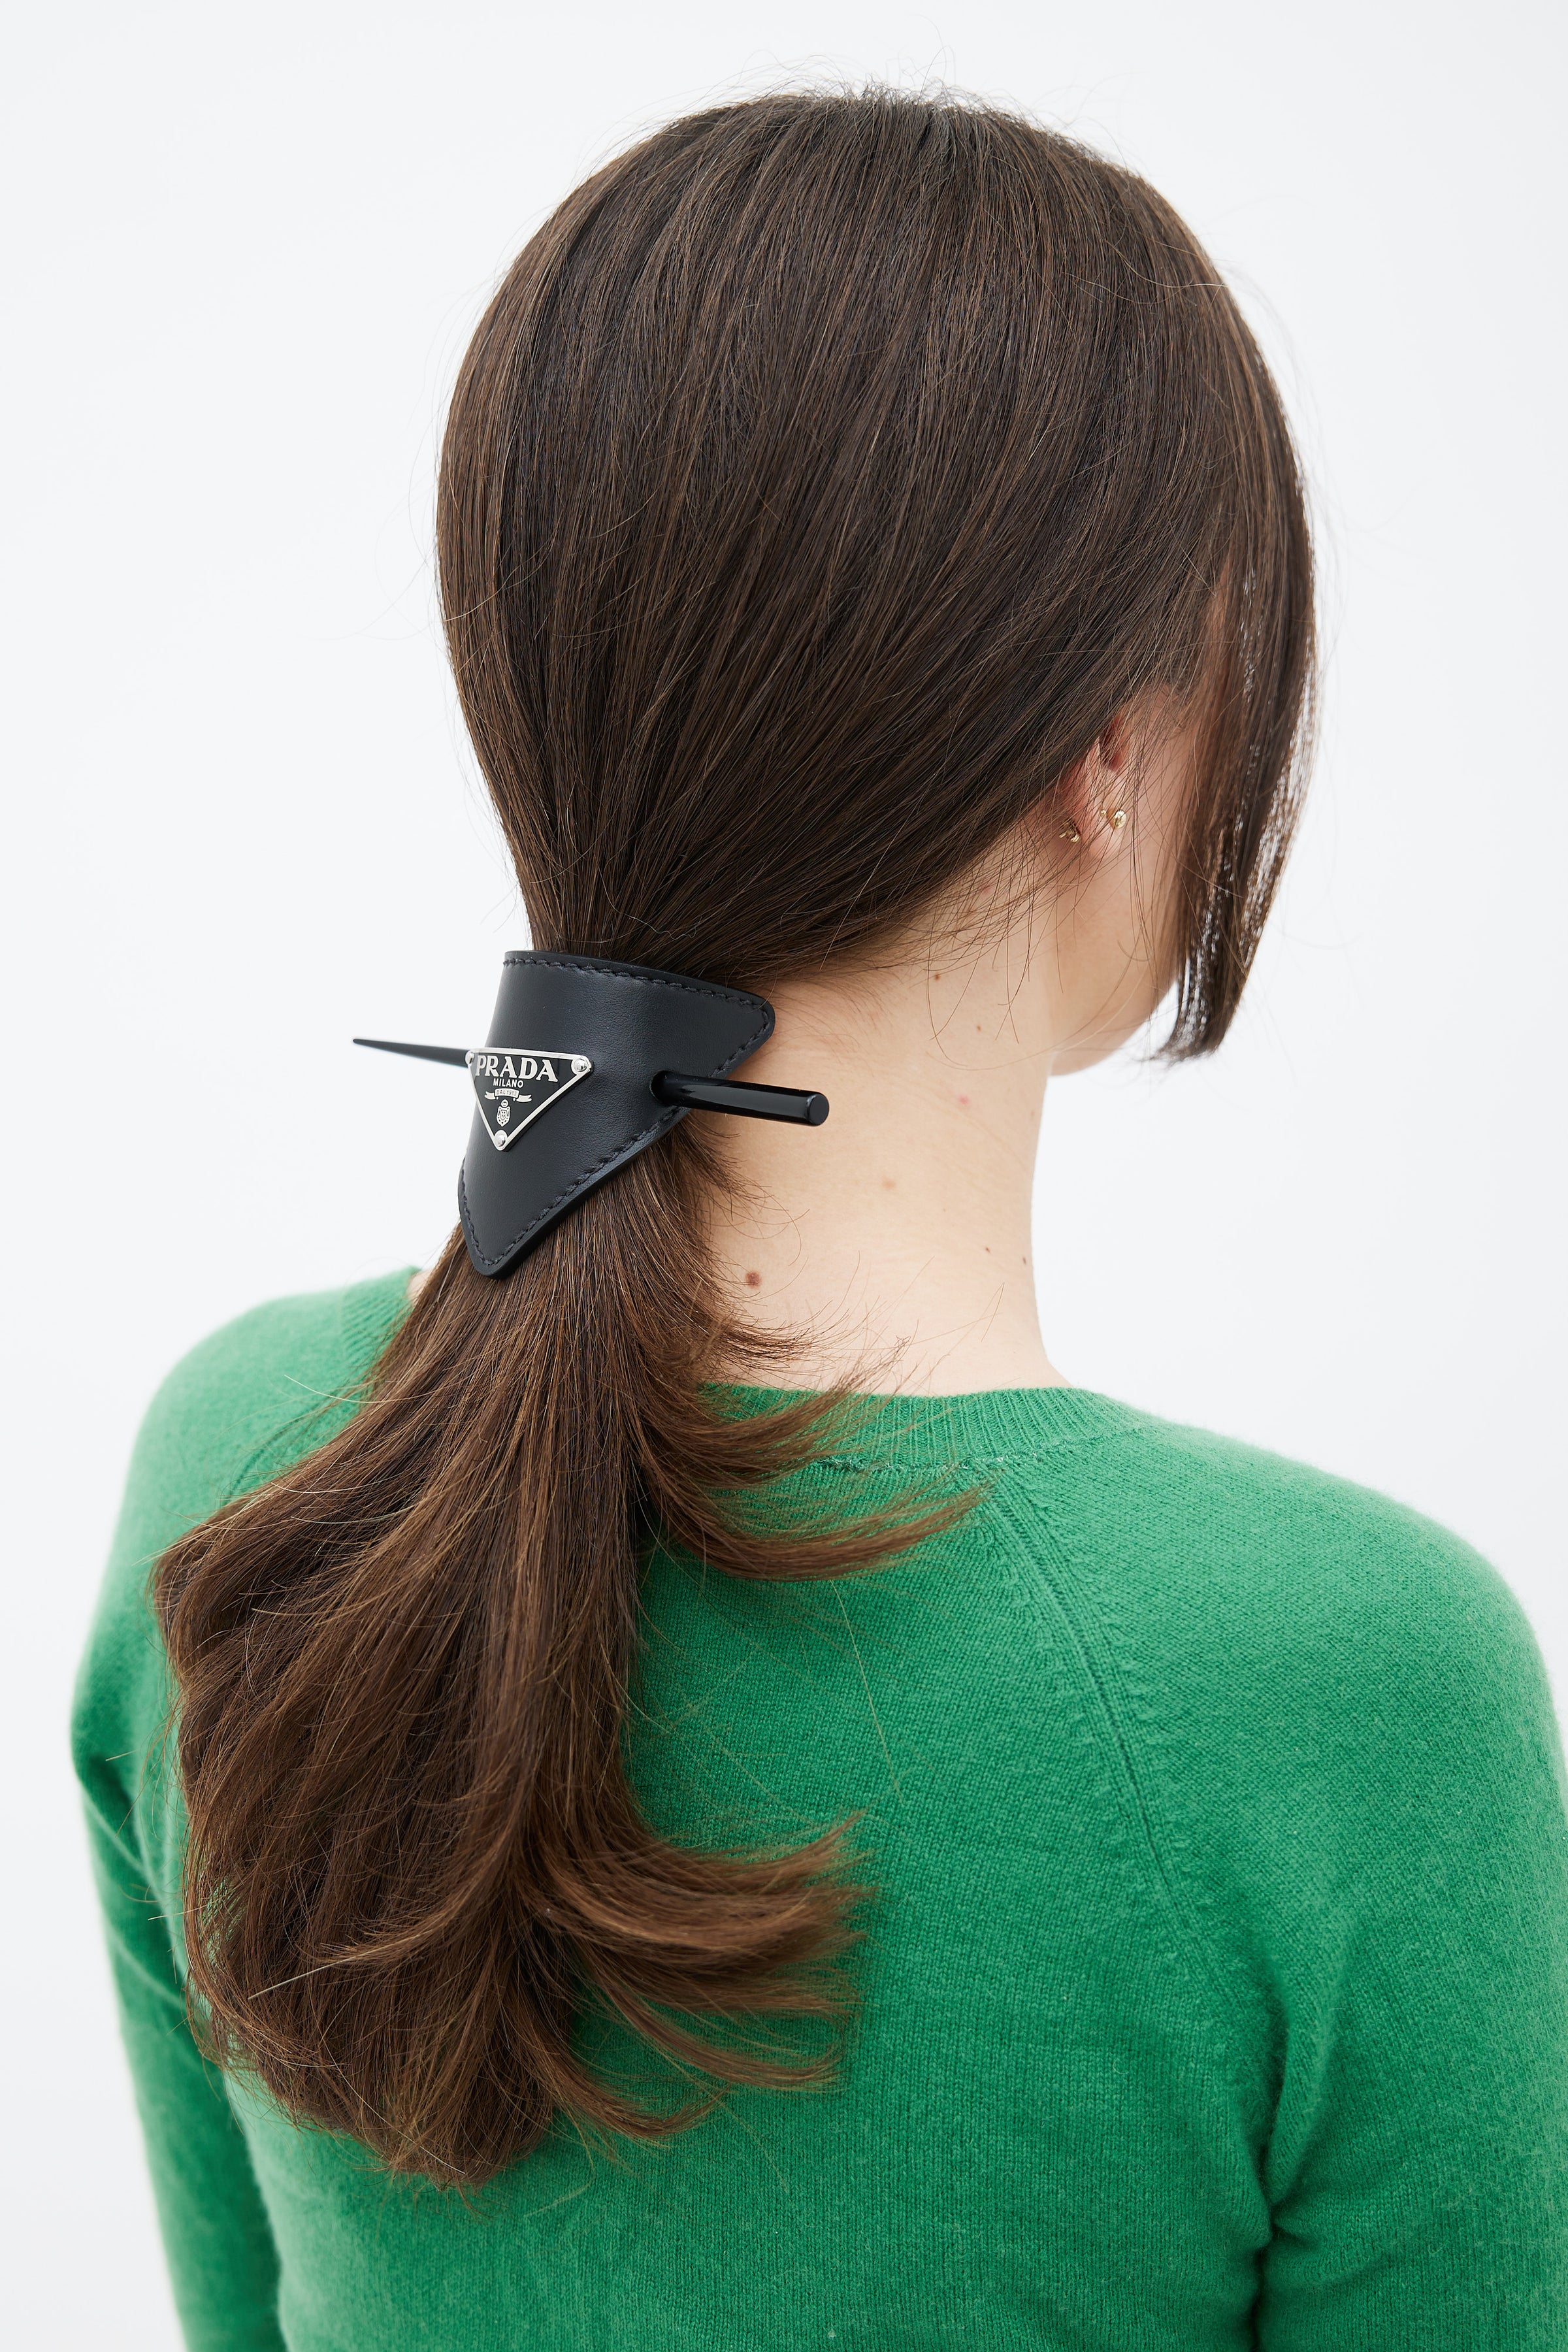 Prada Black logo hair clips